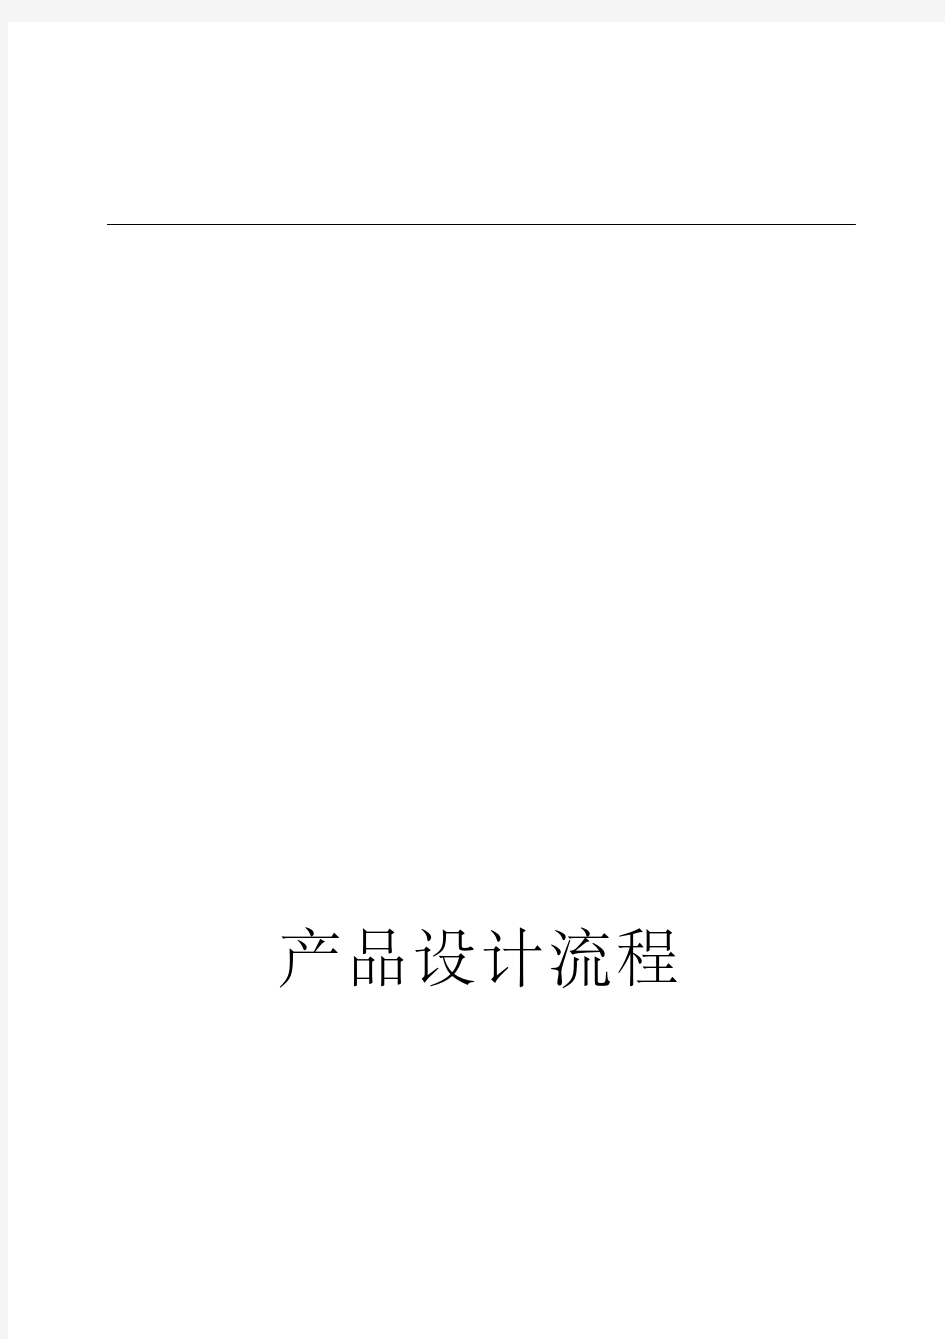 技术部研发流程图.pdf